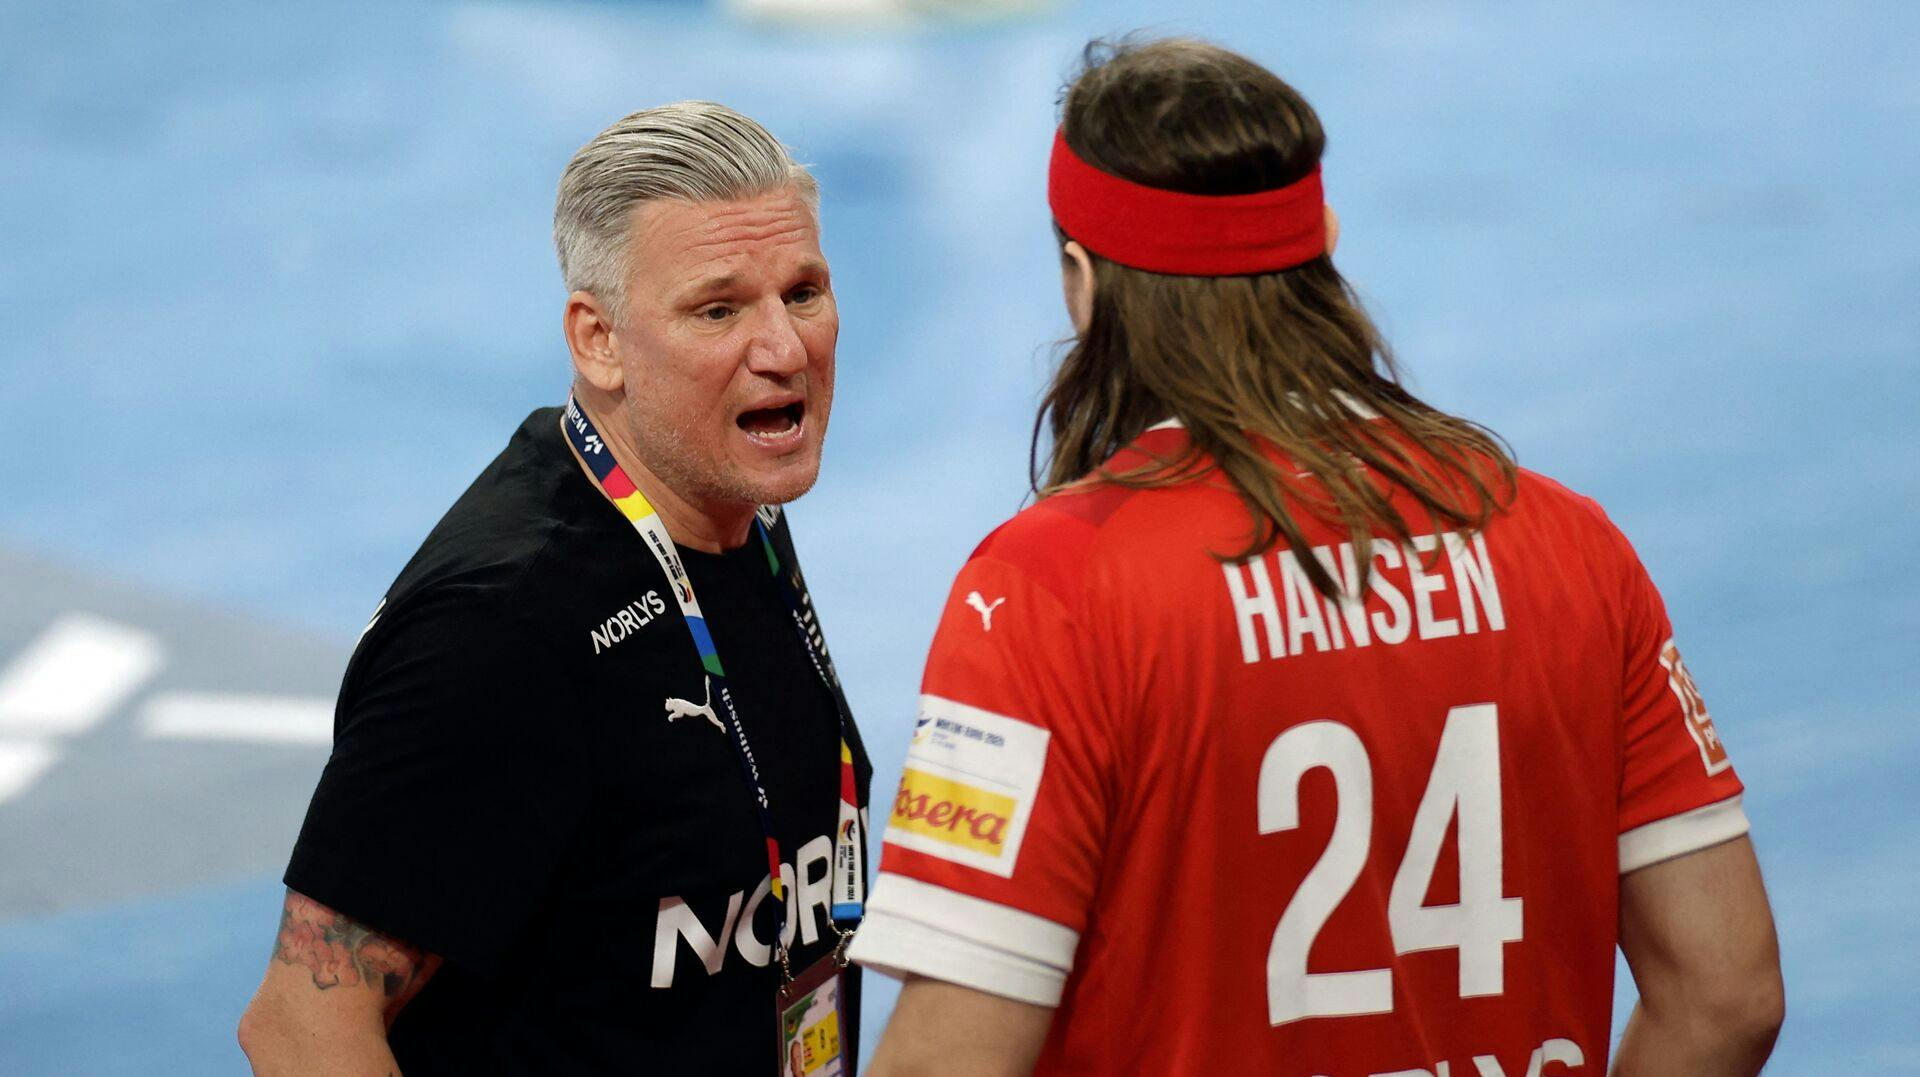 Nikolaj Jacobsen kalder det for en trist dag for håndbolden, efter Mikkel Hansen har annonceret, at han stopper karrieren til sommer